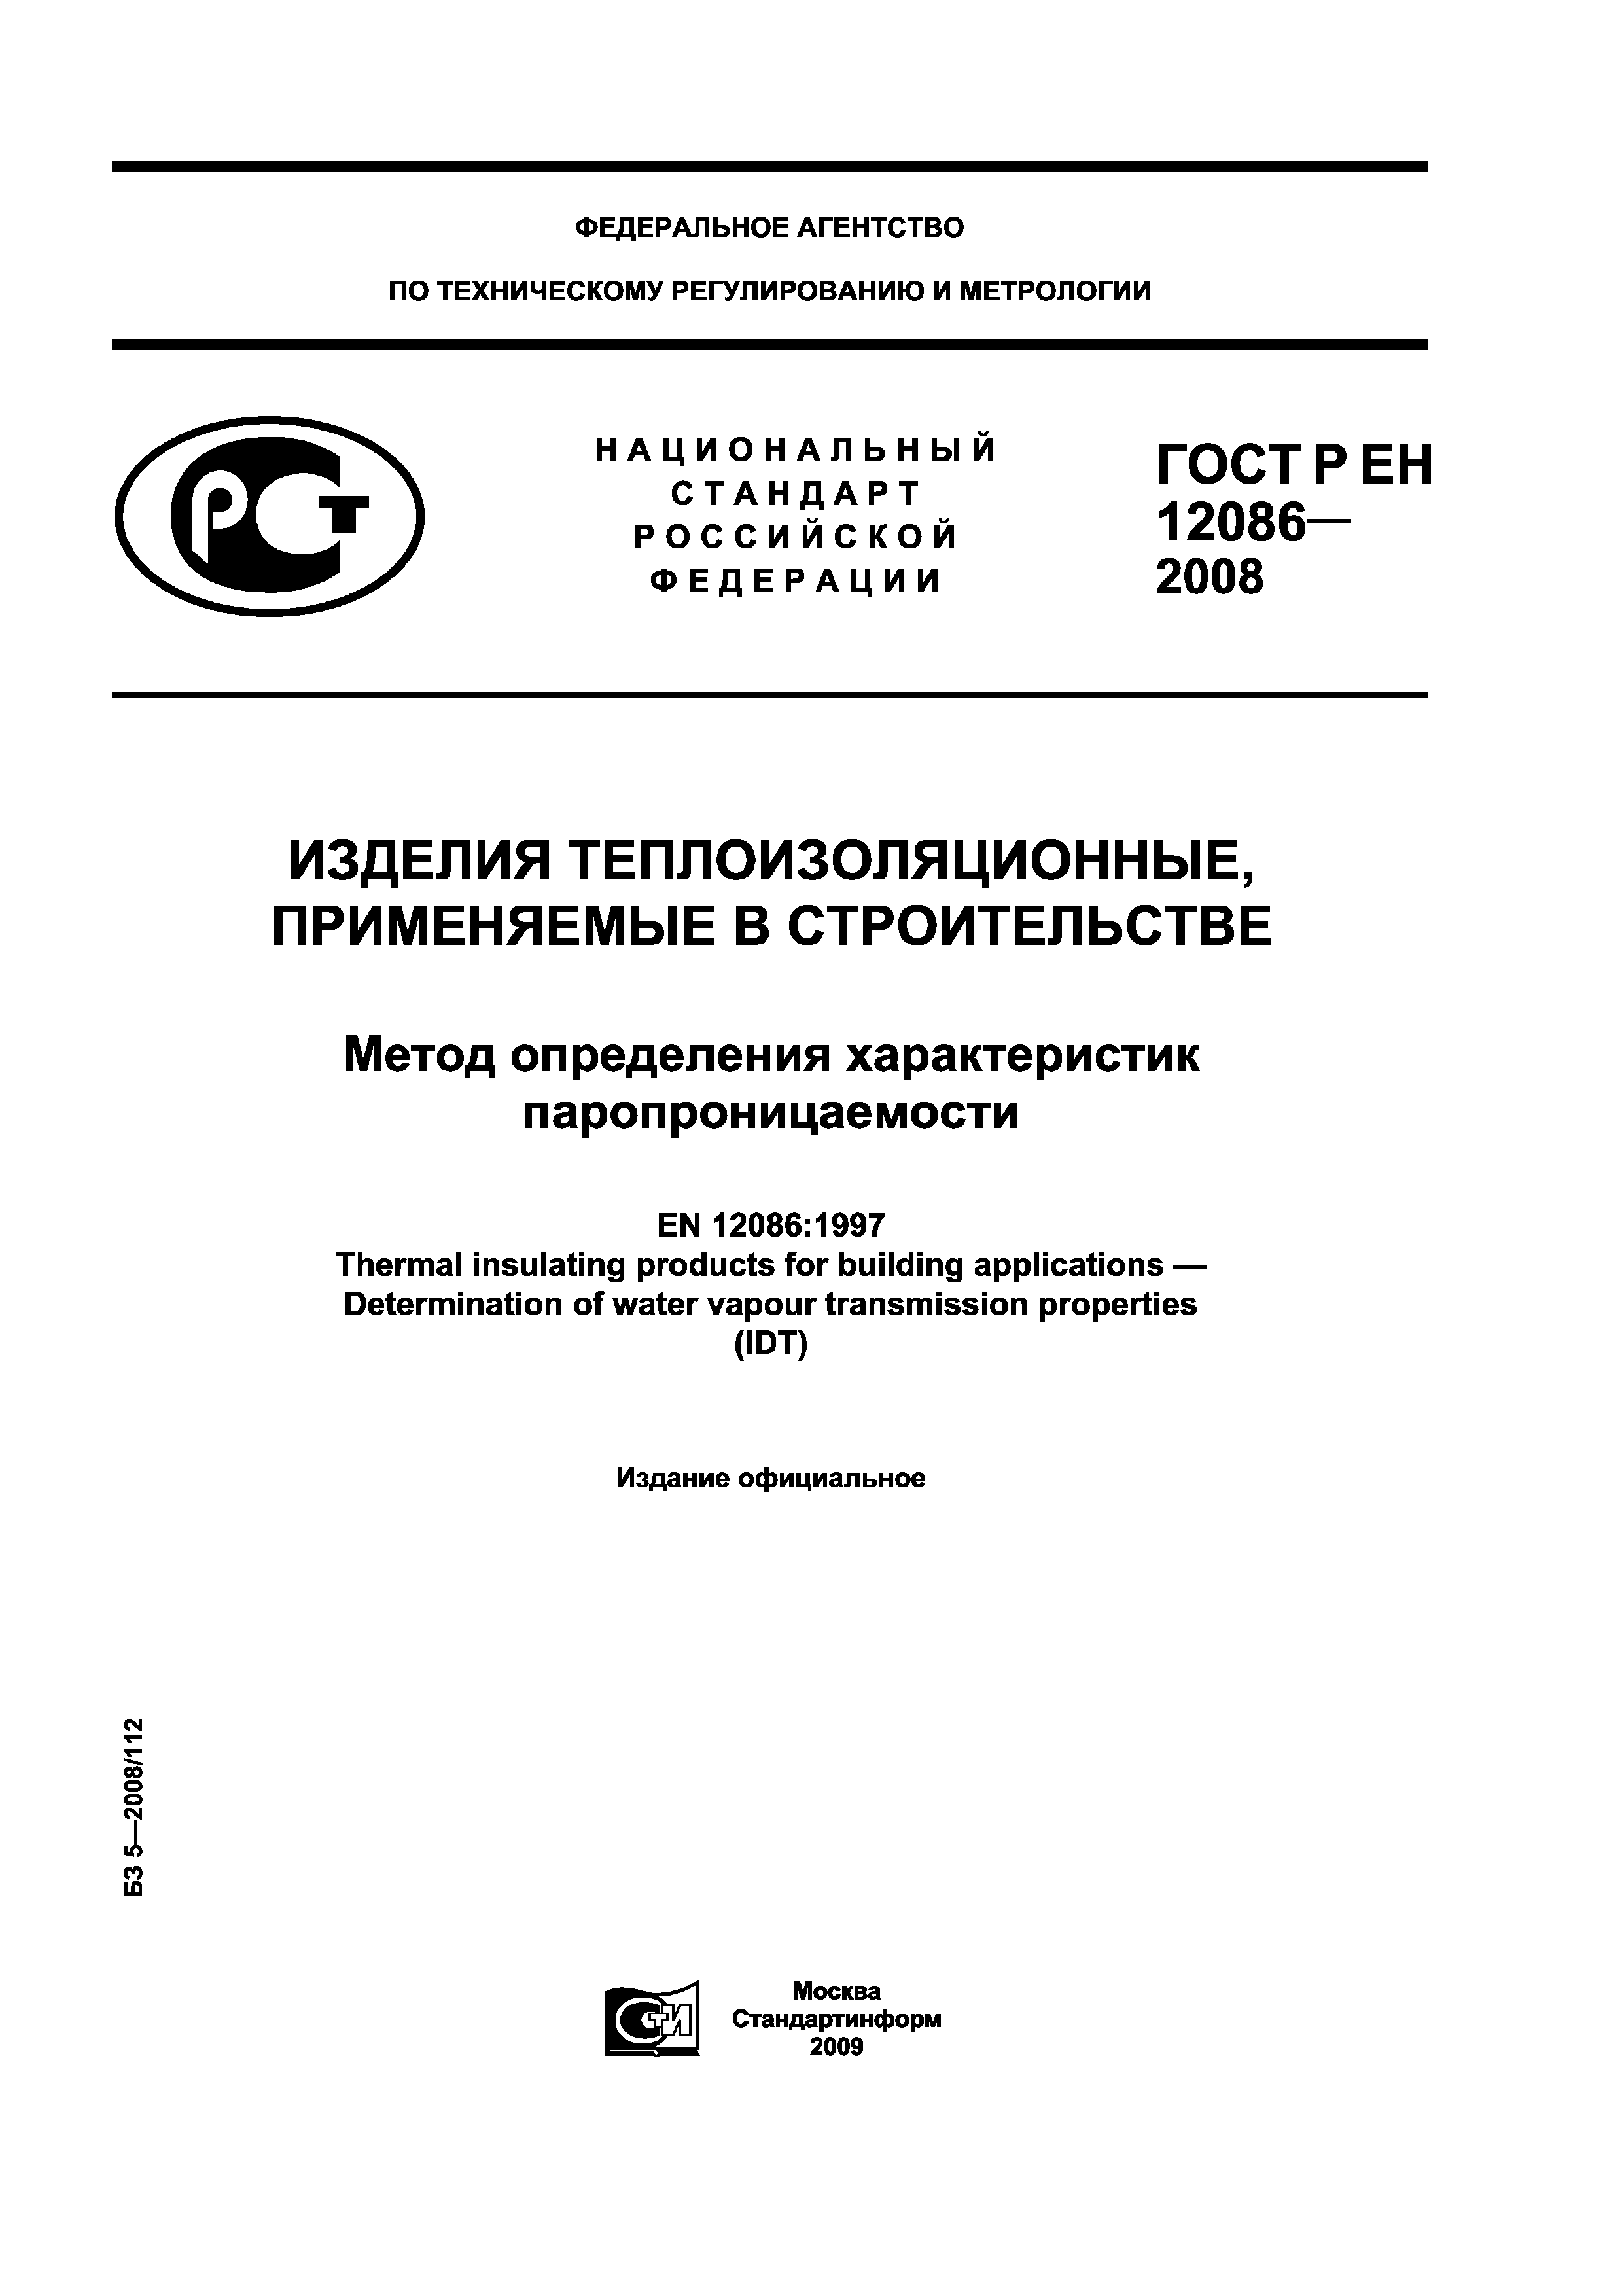 ГОСТ Р ЕН 12086-2008